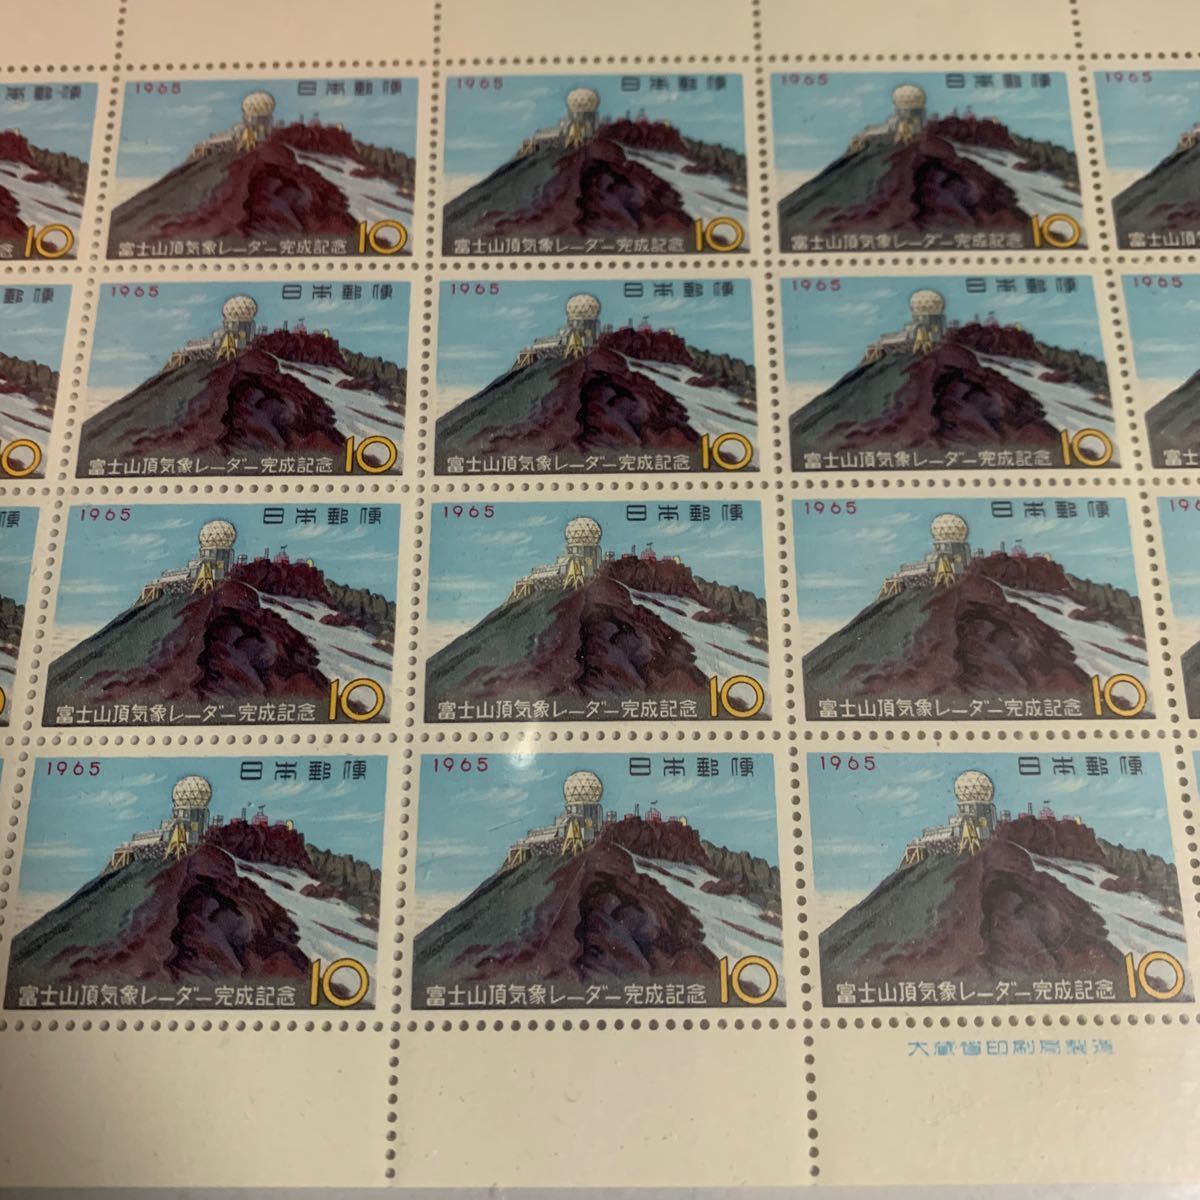 富士山頂気象レーダー完成記念　昭和40年　切手　日本切手　切手シート　記念切手